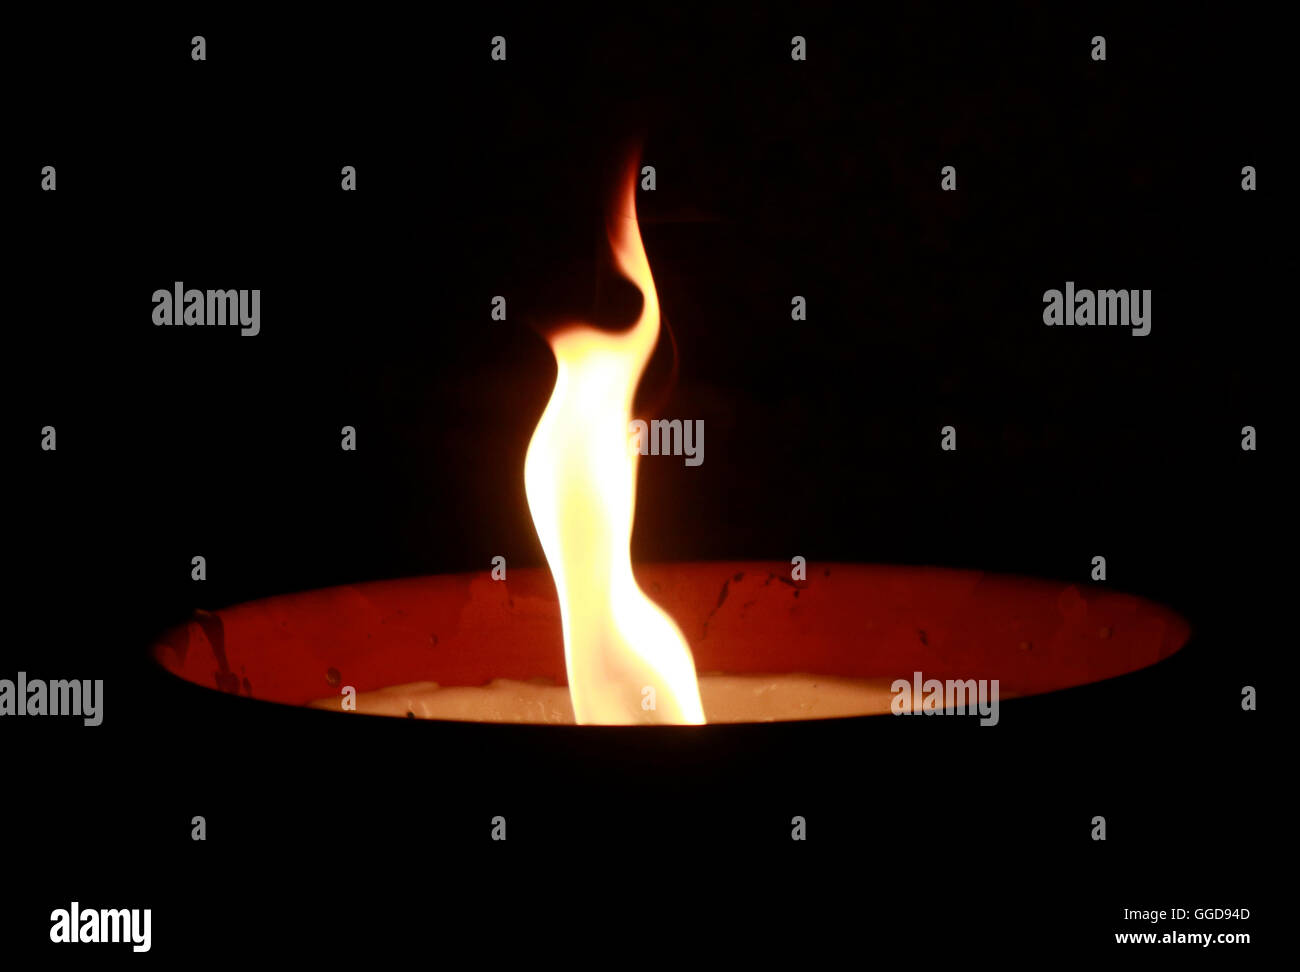 Feuer feu nuit obscurité candle light atmosphere chagrin mounring symbolique symbole gedenken feuerschale Banque D'Images